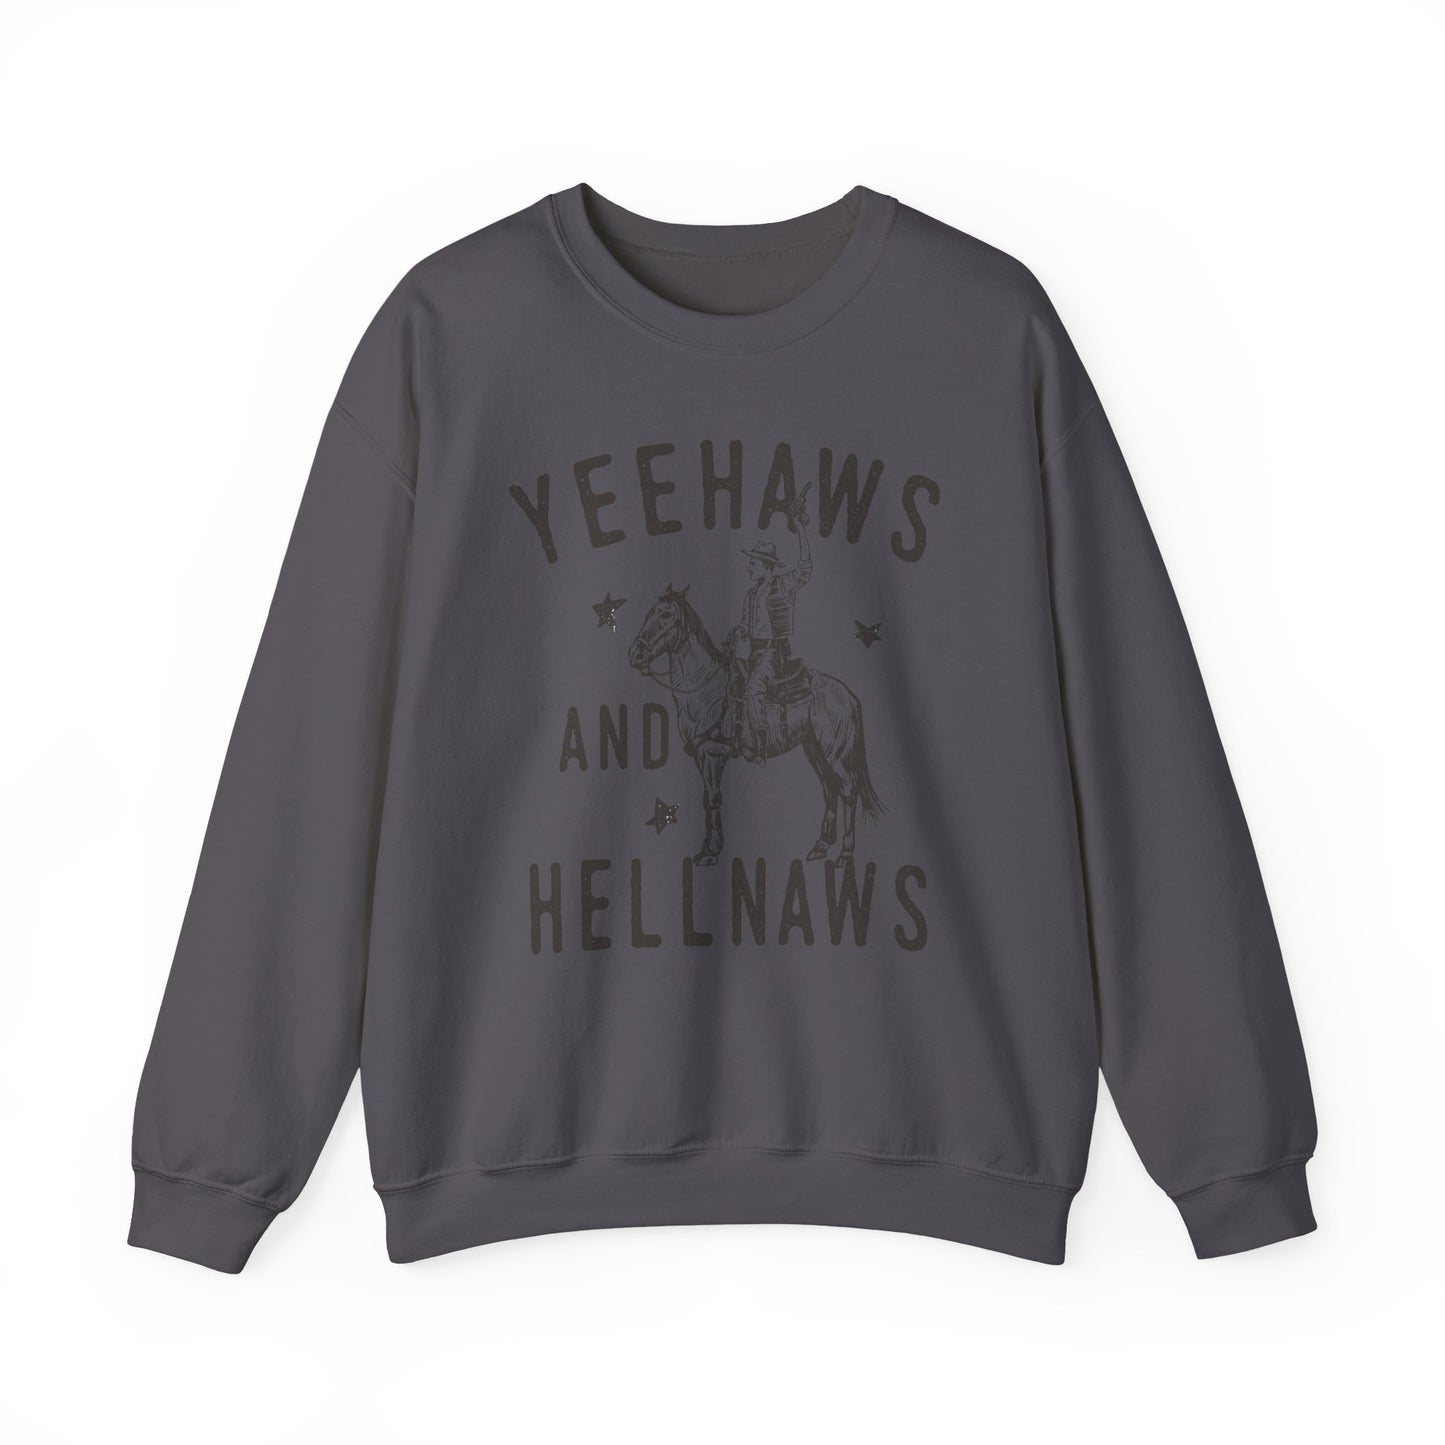 Yeehaws and Hellnaws, Western Sweatshirt